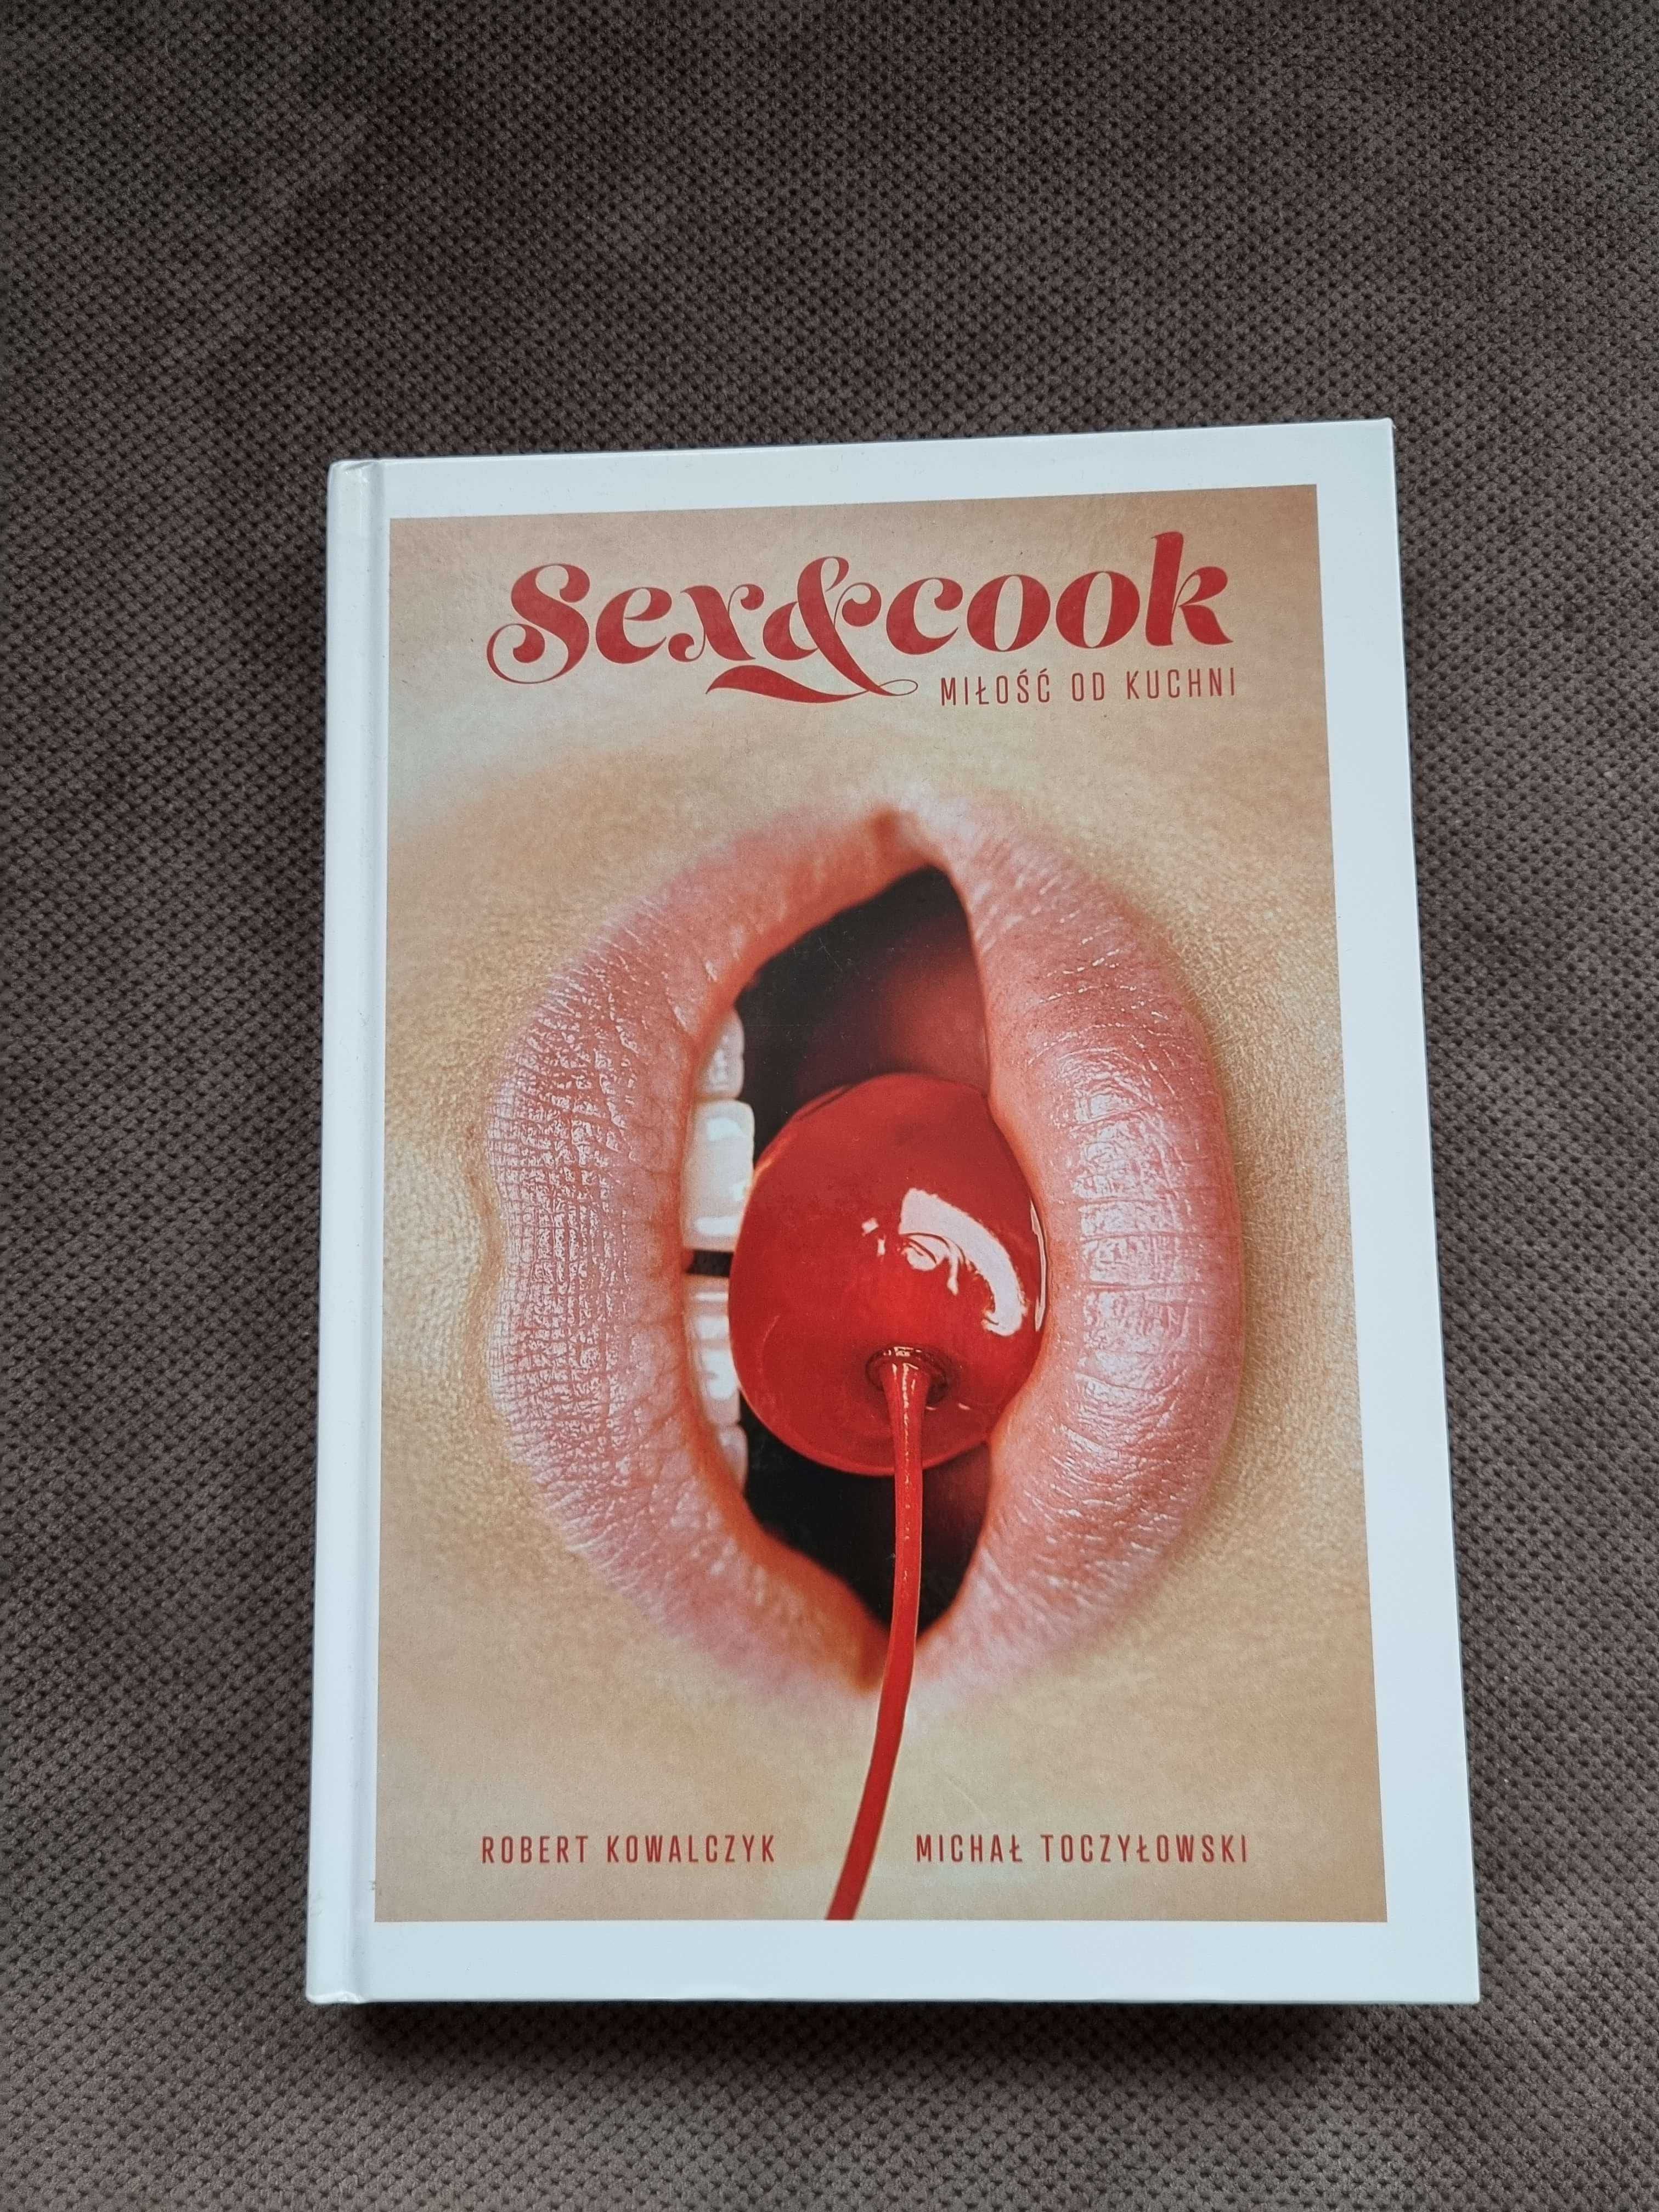 Sex & Cook Miłość do kuchni R. Kowalczyk M. Toczyłowski